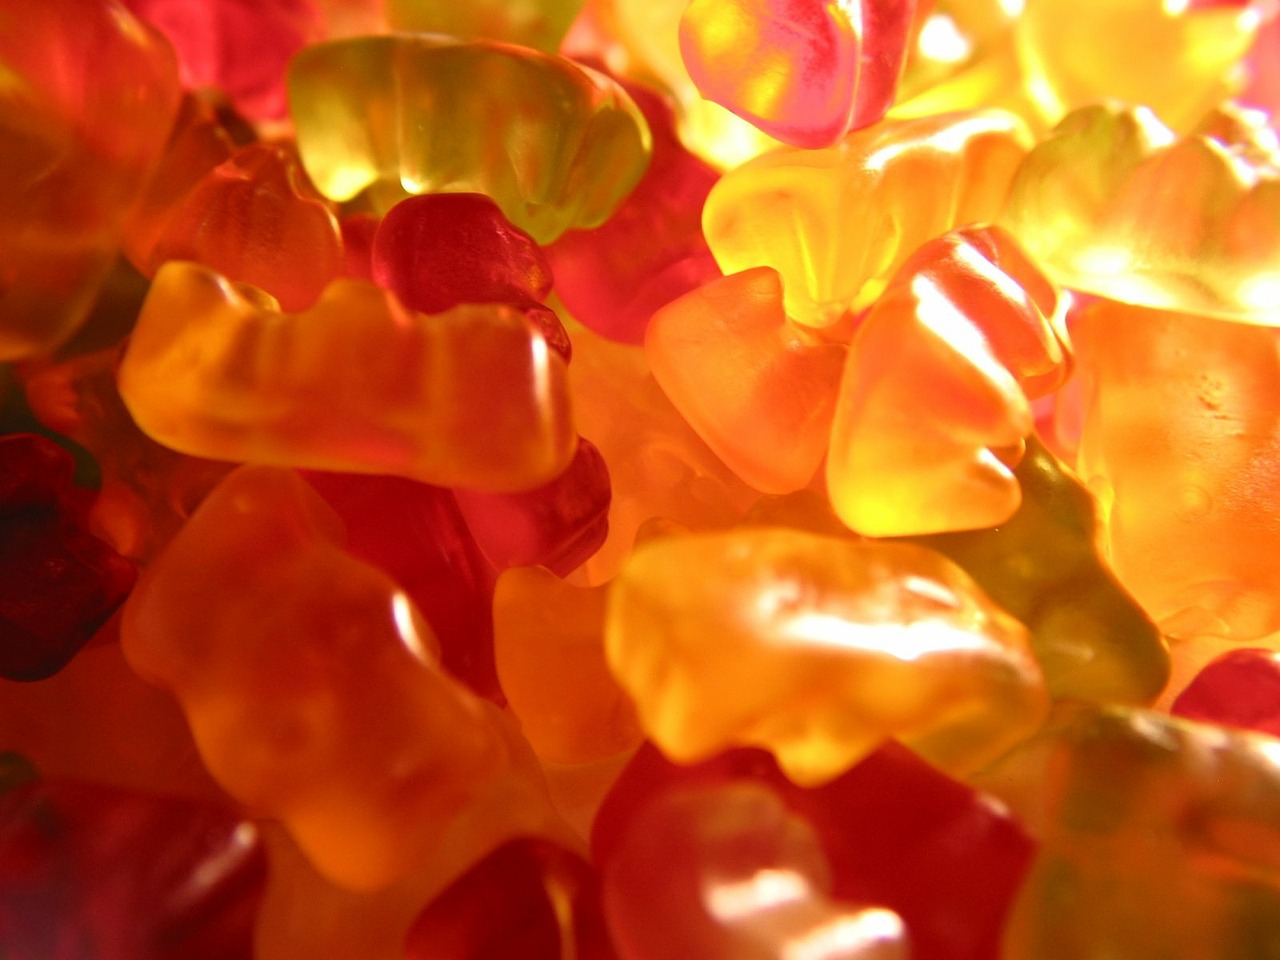 gummibärchen candy jelly free photo